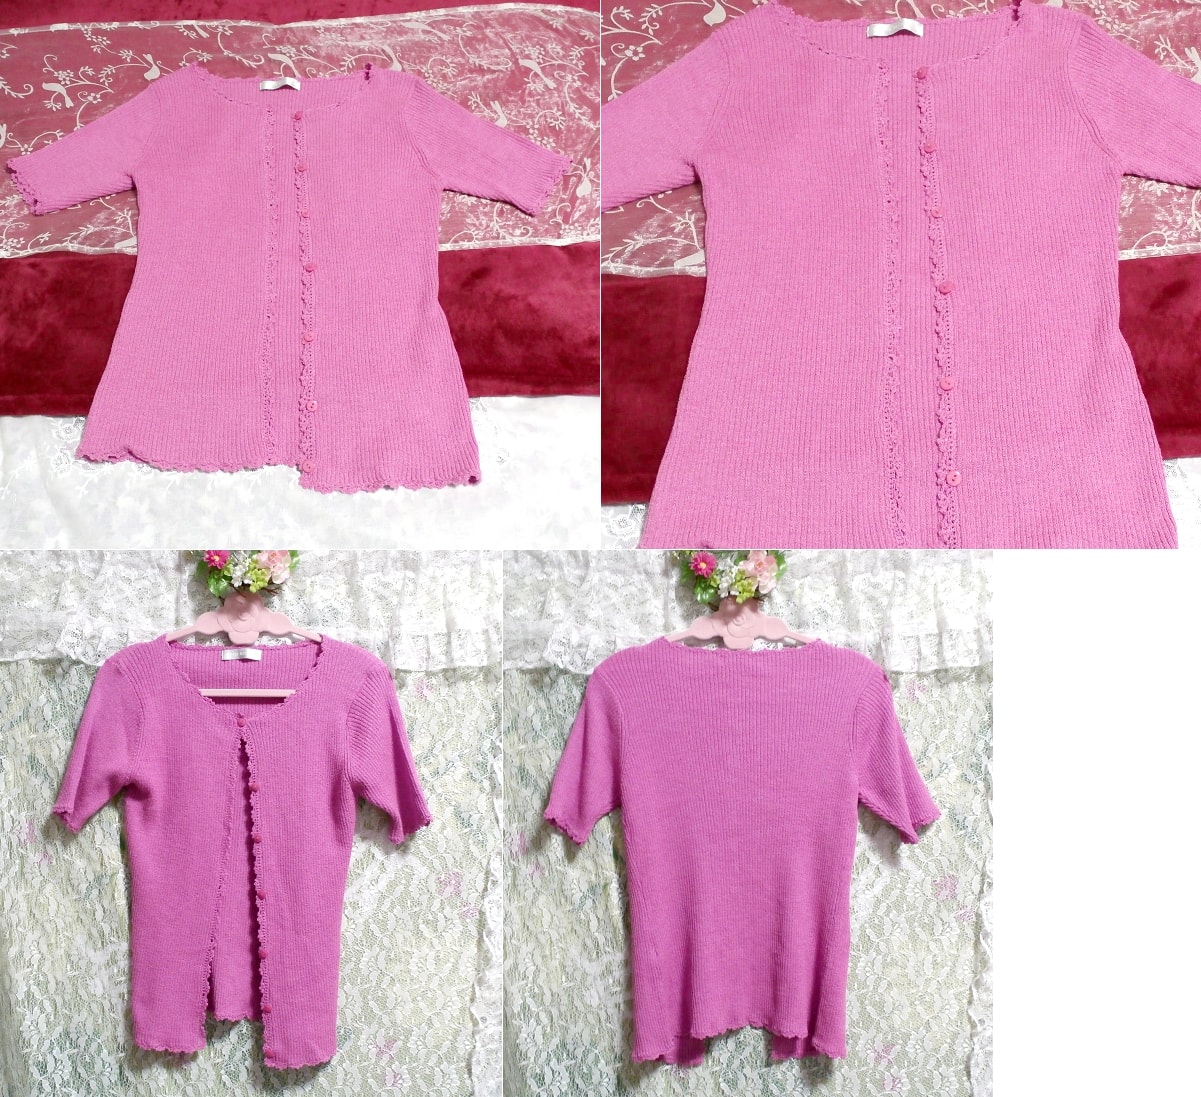 Camisetas de punto rosa violeta, sayo, manga corta, talla m